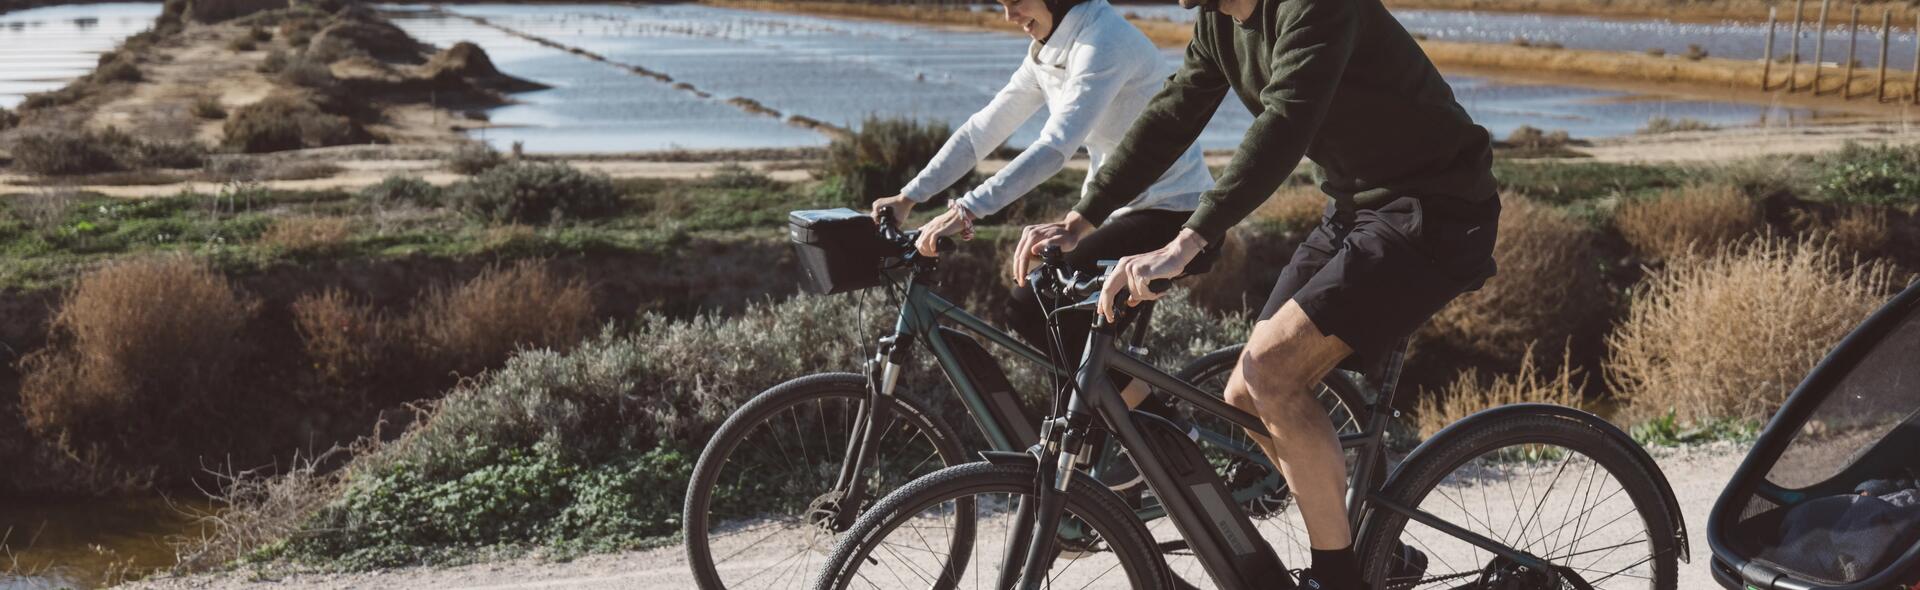 kobieta i mężczyzna jadący na rowerach elektrycznych w kaskach